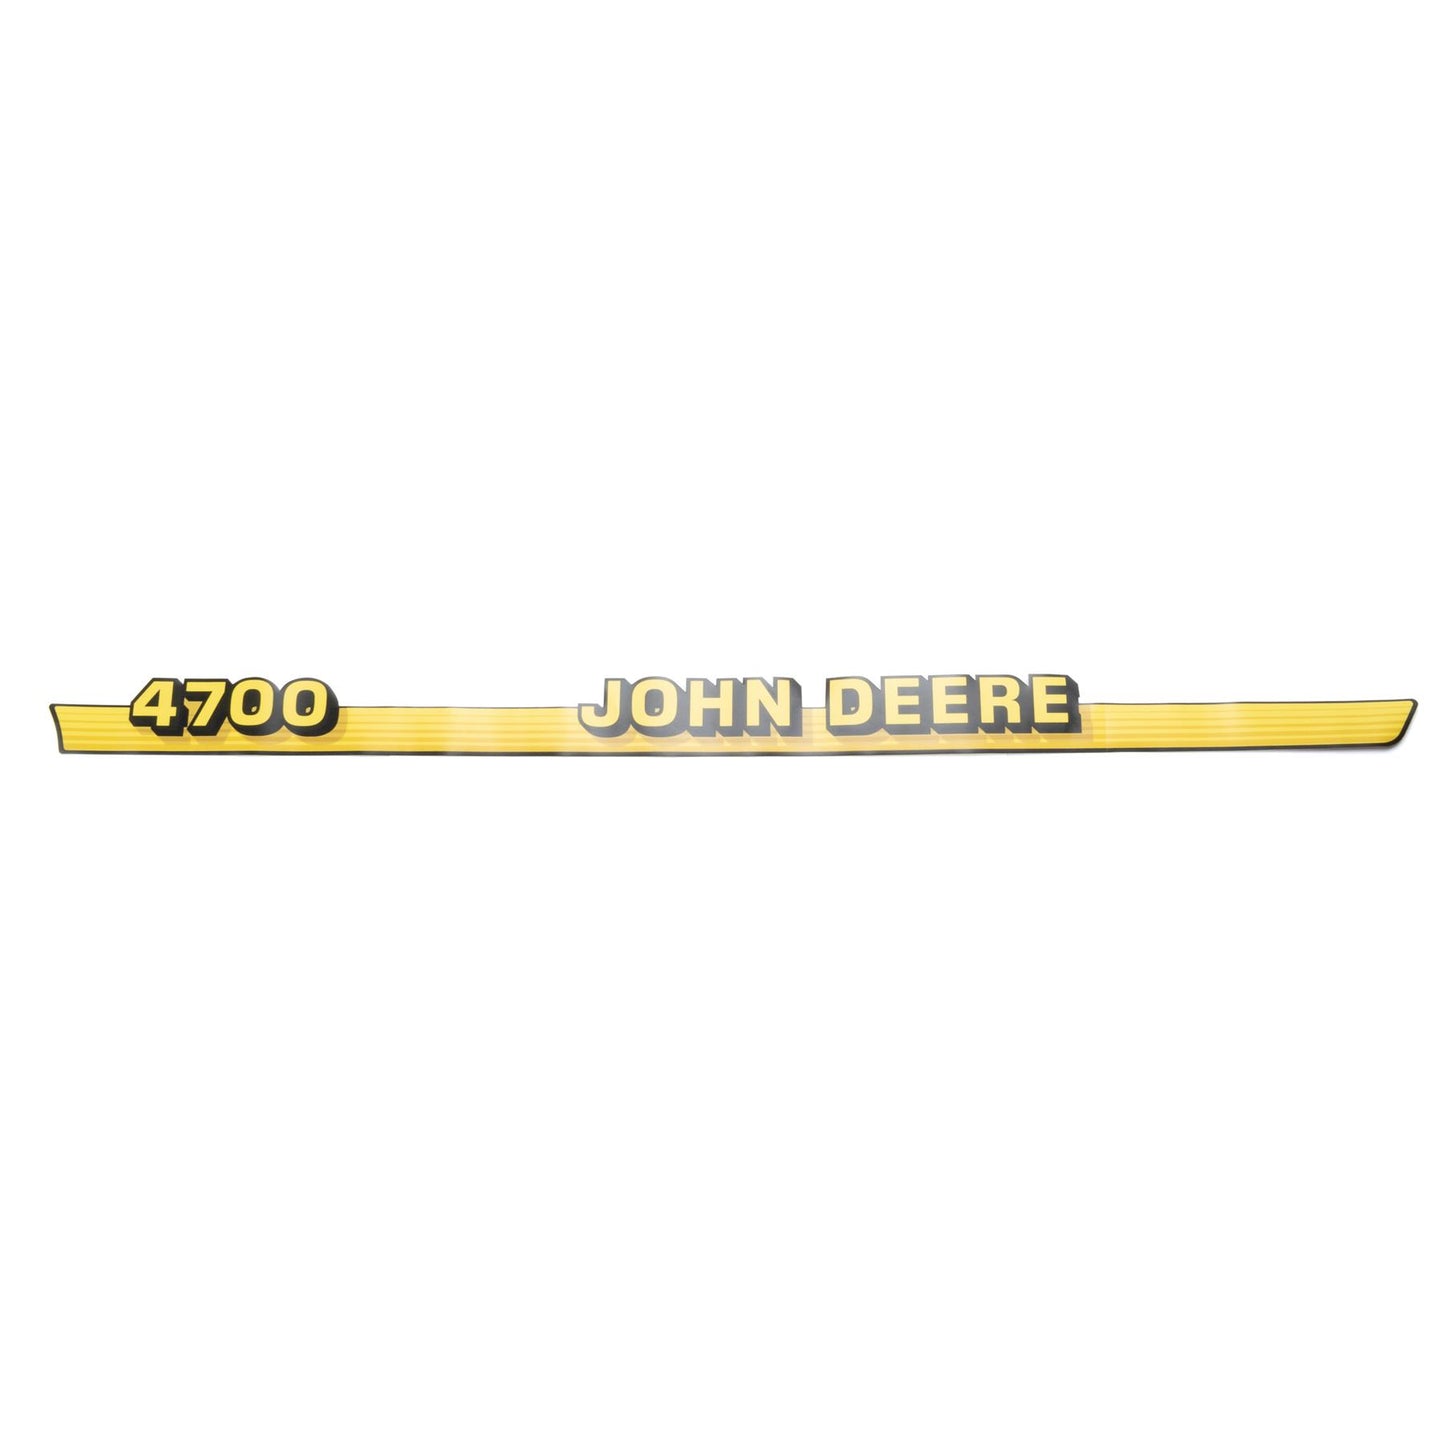 John Deere Decal - 4700 - Left Side - LVU10342